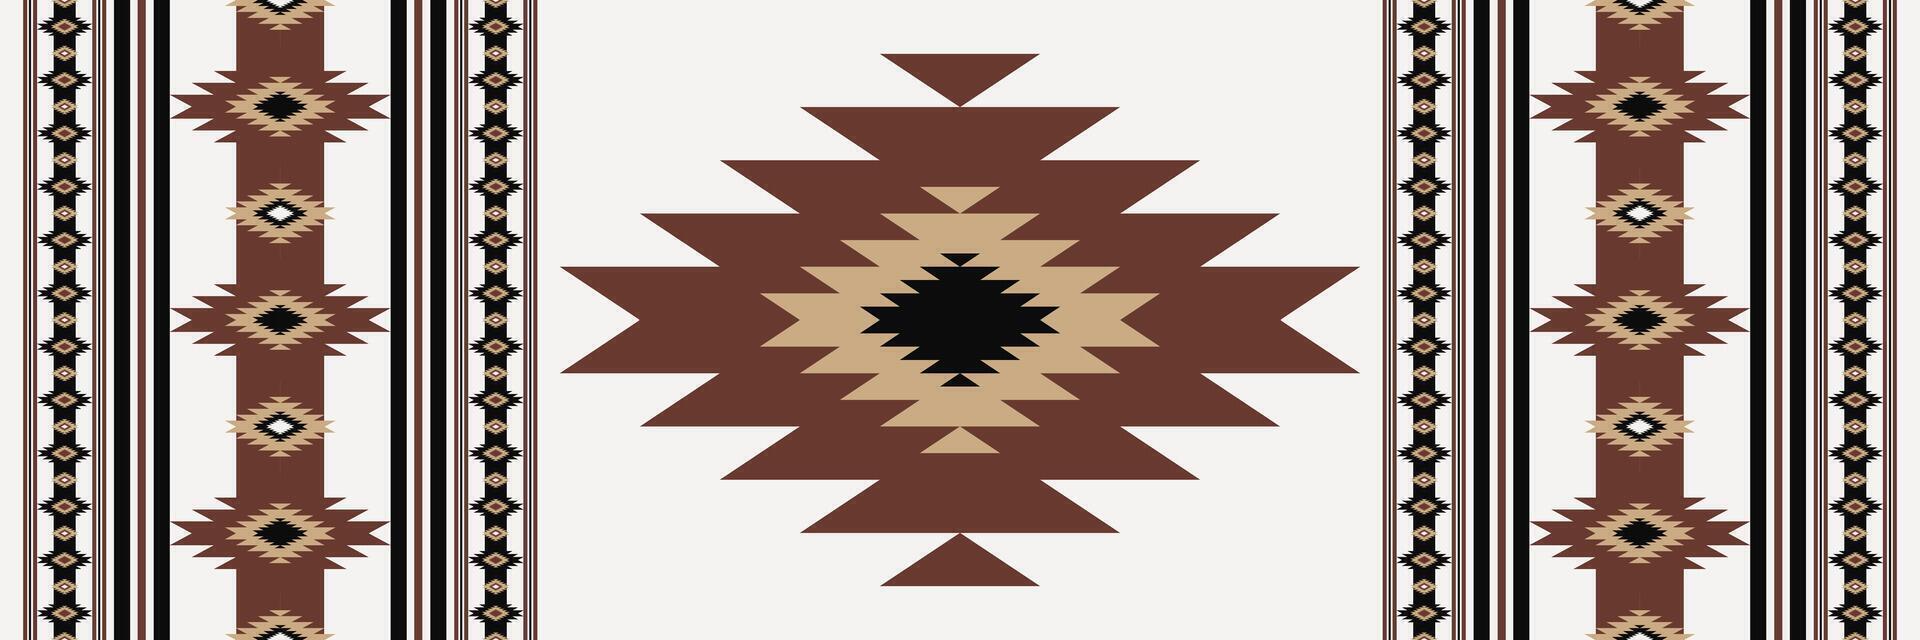 del suroeste geométrico alfombra modelo. azteca navajo geométrico rayas sin costura modelo. étnico Sur oeste geométrico modelo utilizar para zona alfombras, alfombra, tapiz, Manteles, mesa corredor, almohadón. vector